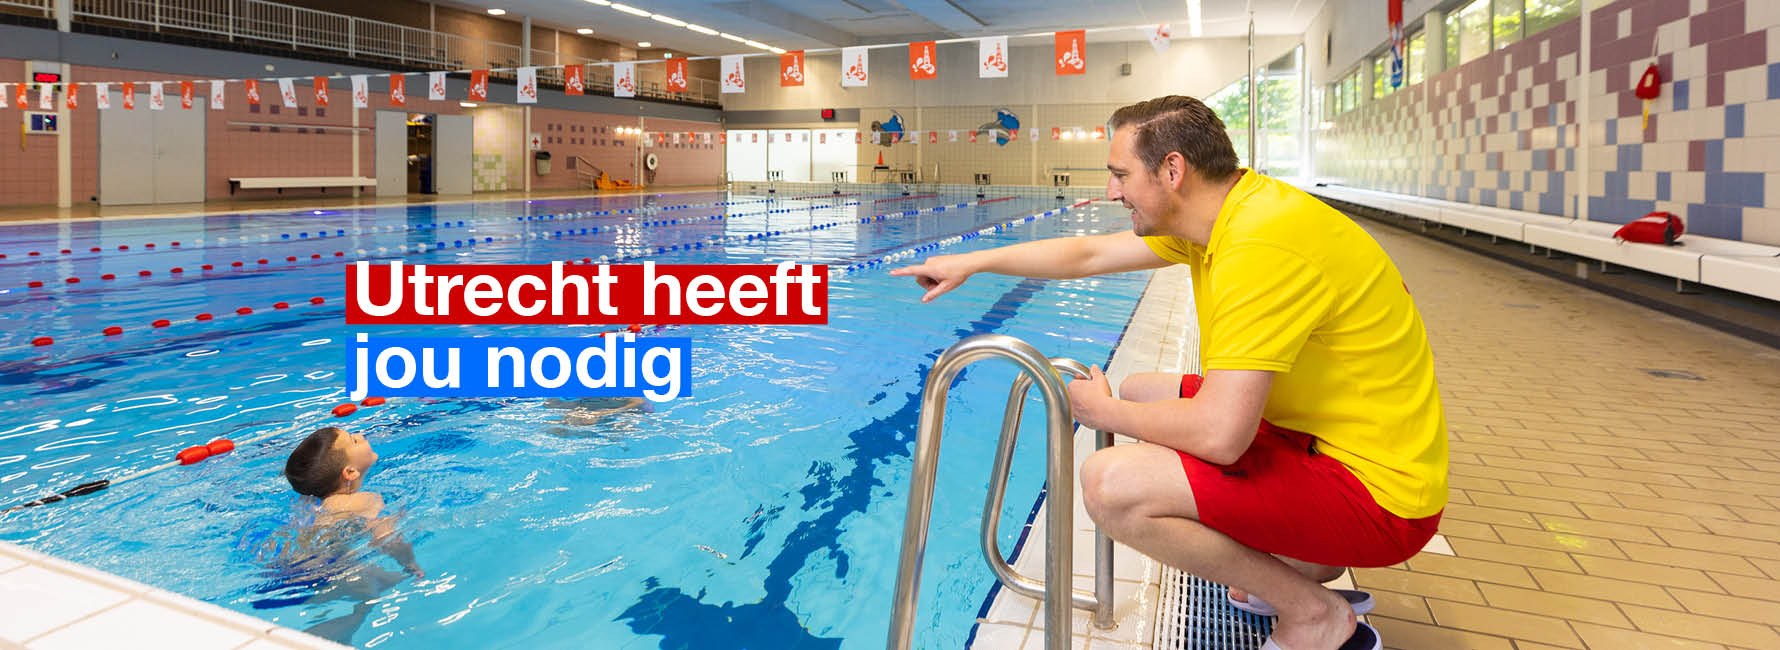 Een zwembadinstructeur hurkt bij het zwembad en geeft instructies. In beeld staat de tekst Utrecht heeft jou nodig.